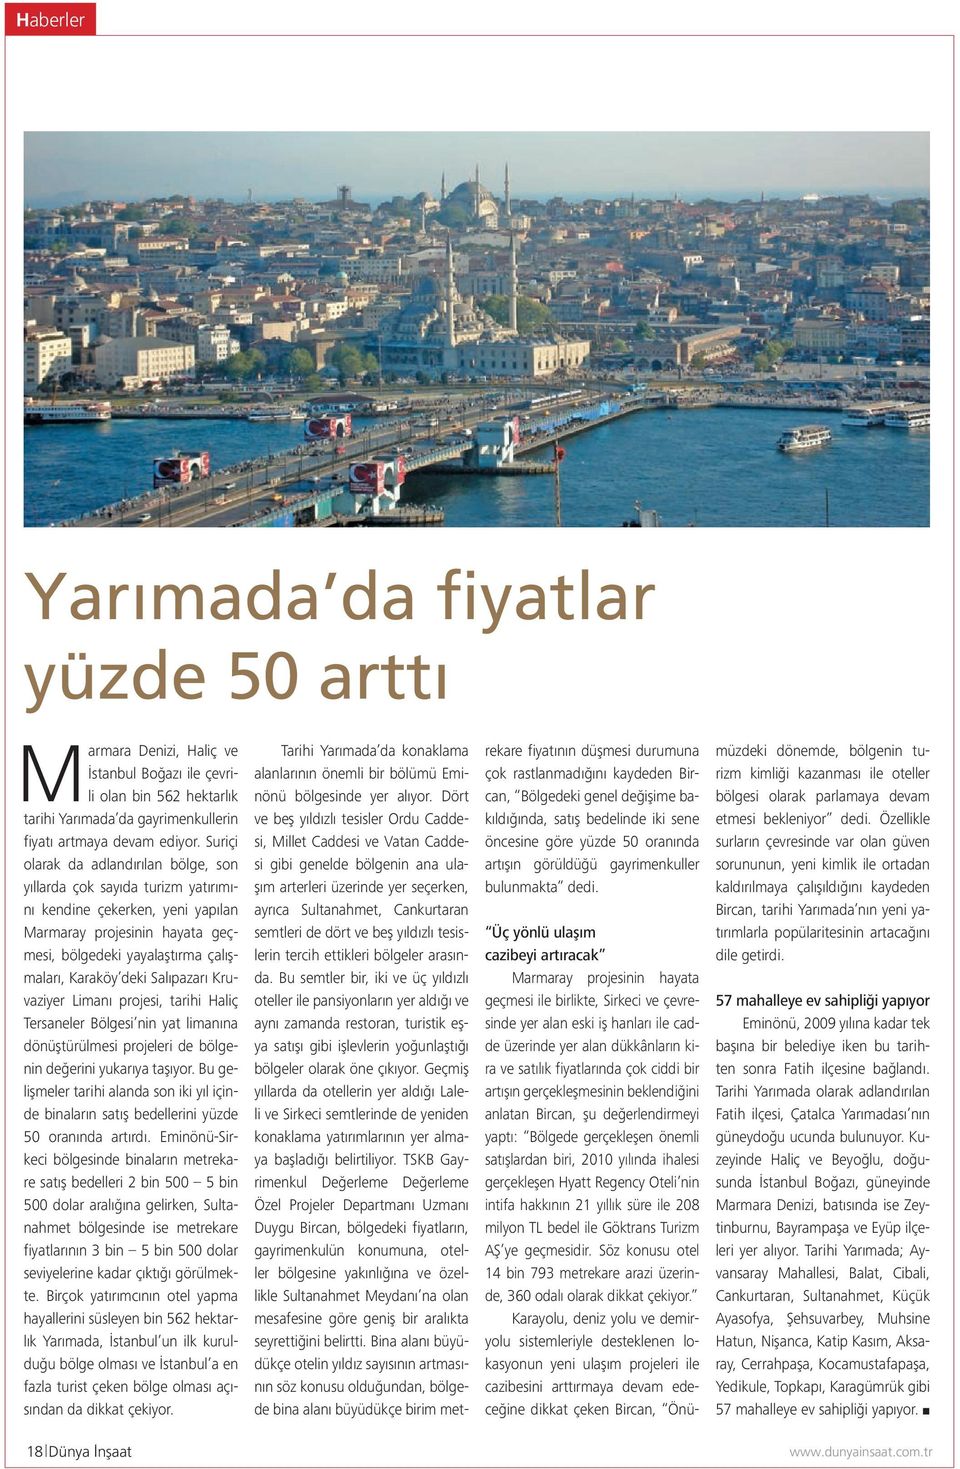 Salıpazarı Kruvaziyer Limanı projesi, tarihi Haliç Tersaneler Bölgesi nin yat limanına dönüştürülmesi projeleri de bölgenin değerini yukarıya taşıyor.